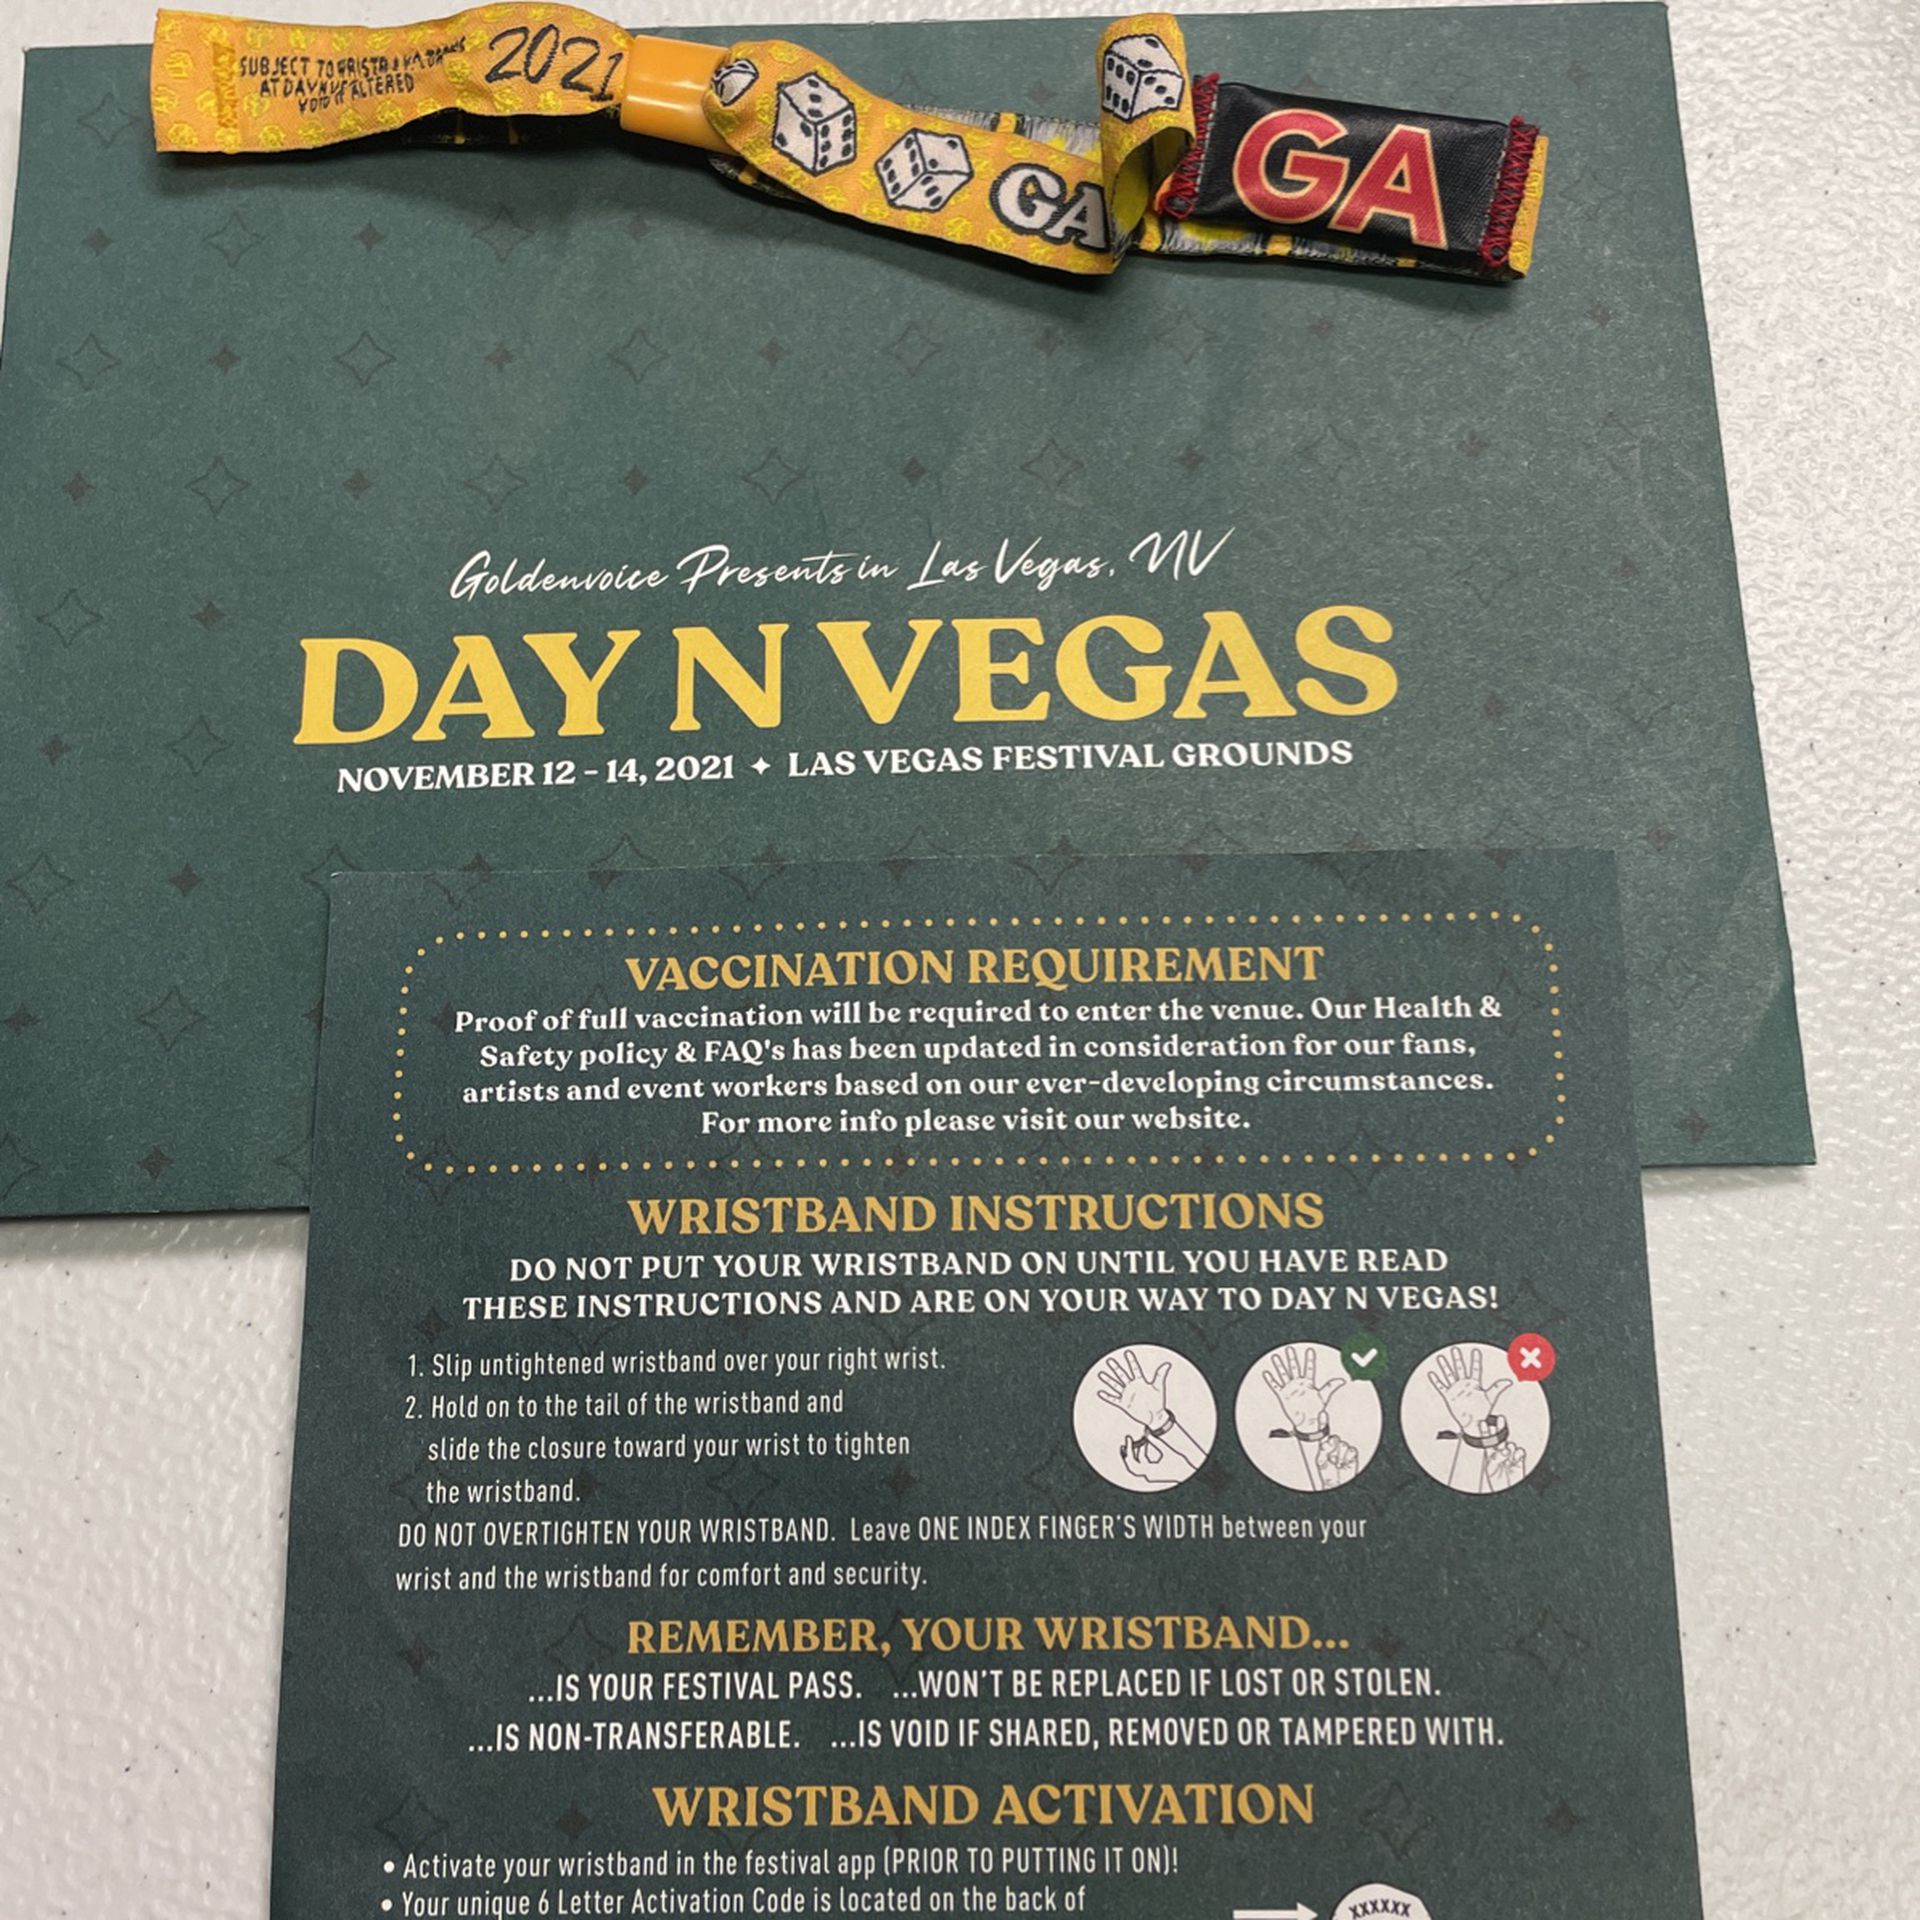 Day N Vegas 2021